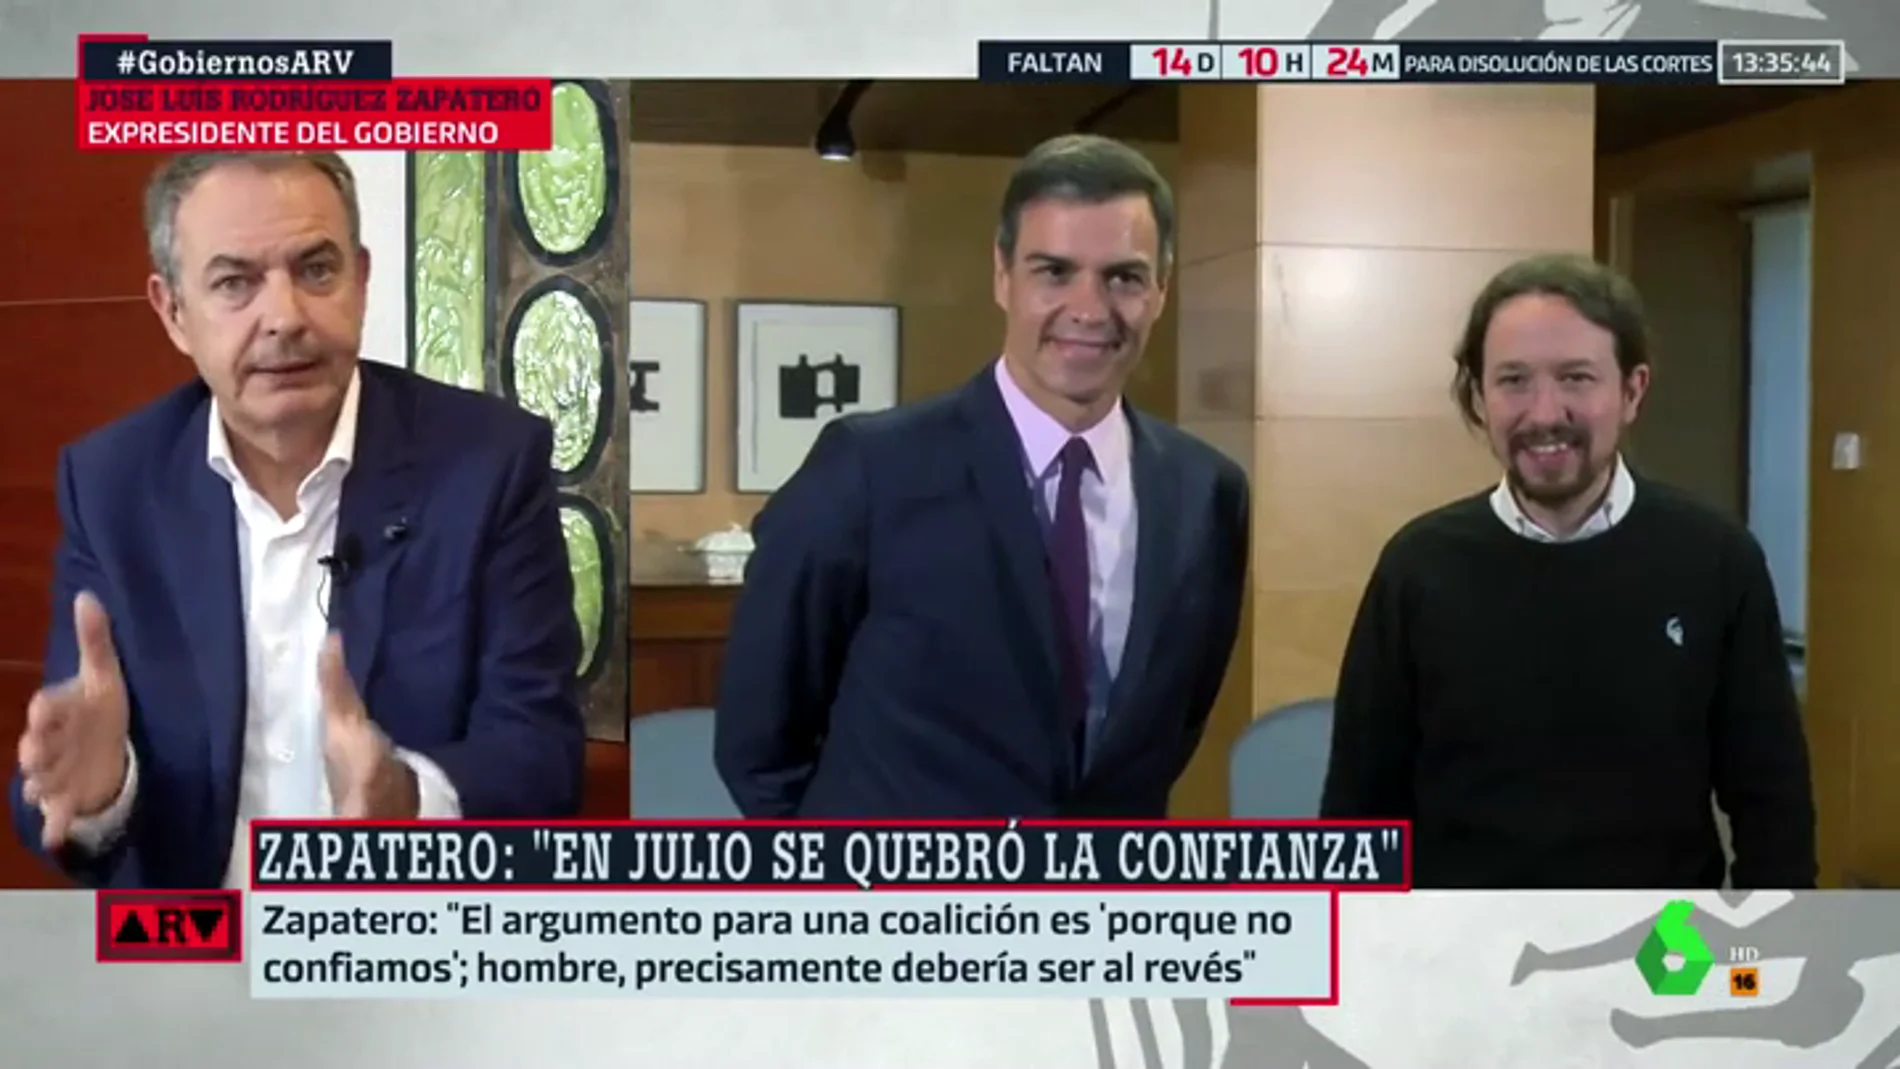 Zapatero, contra el argumento de Unidas Podemos: "Entrar en un Gobierno de coalición para controlar no, eso lo hace la oposición".